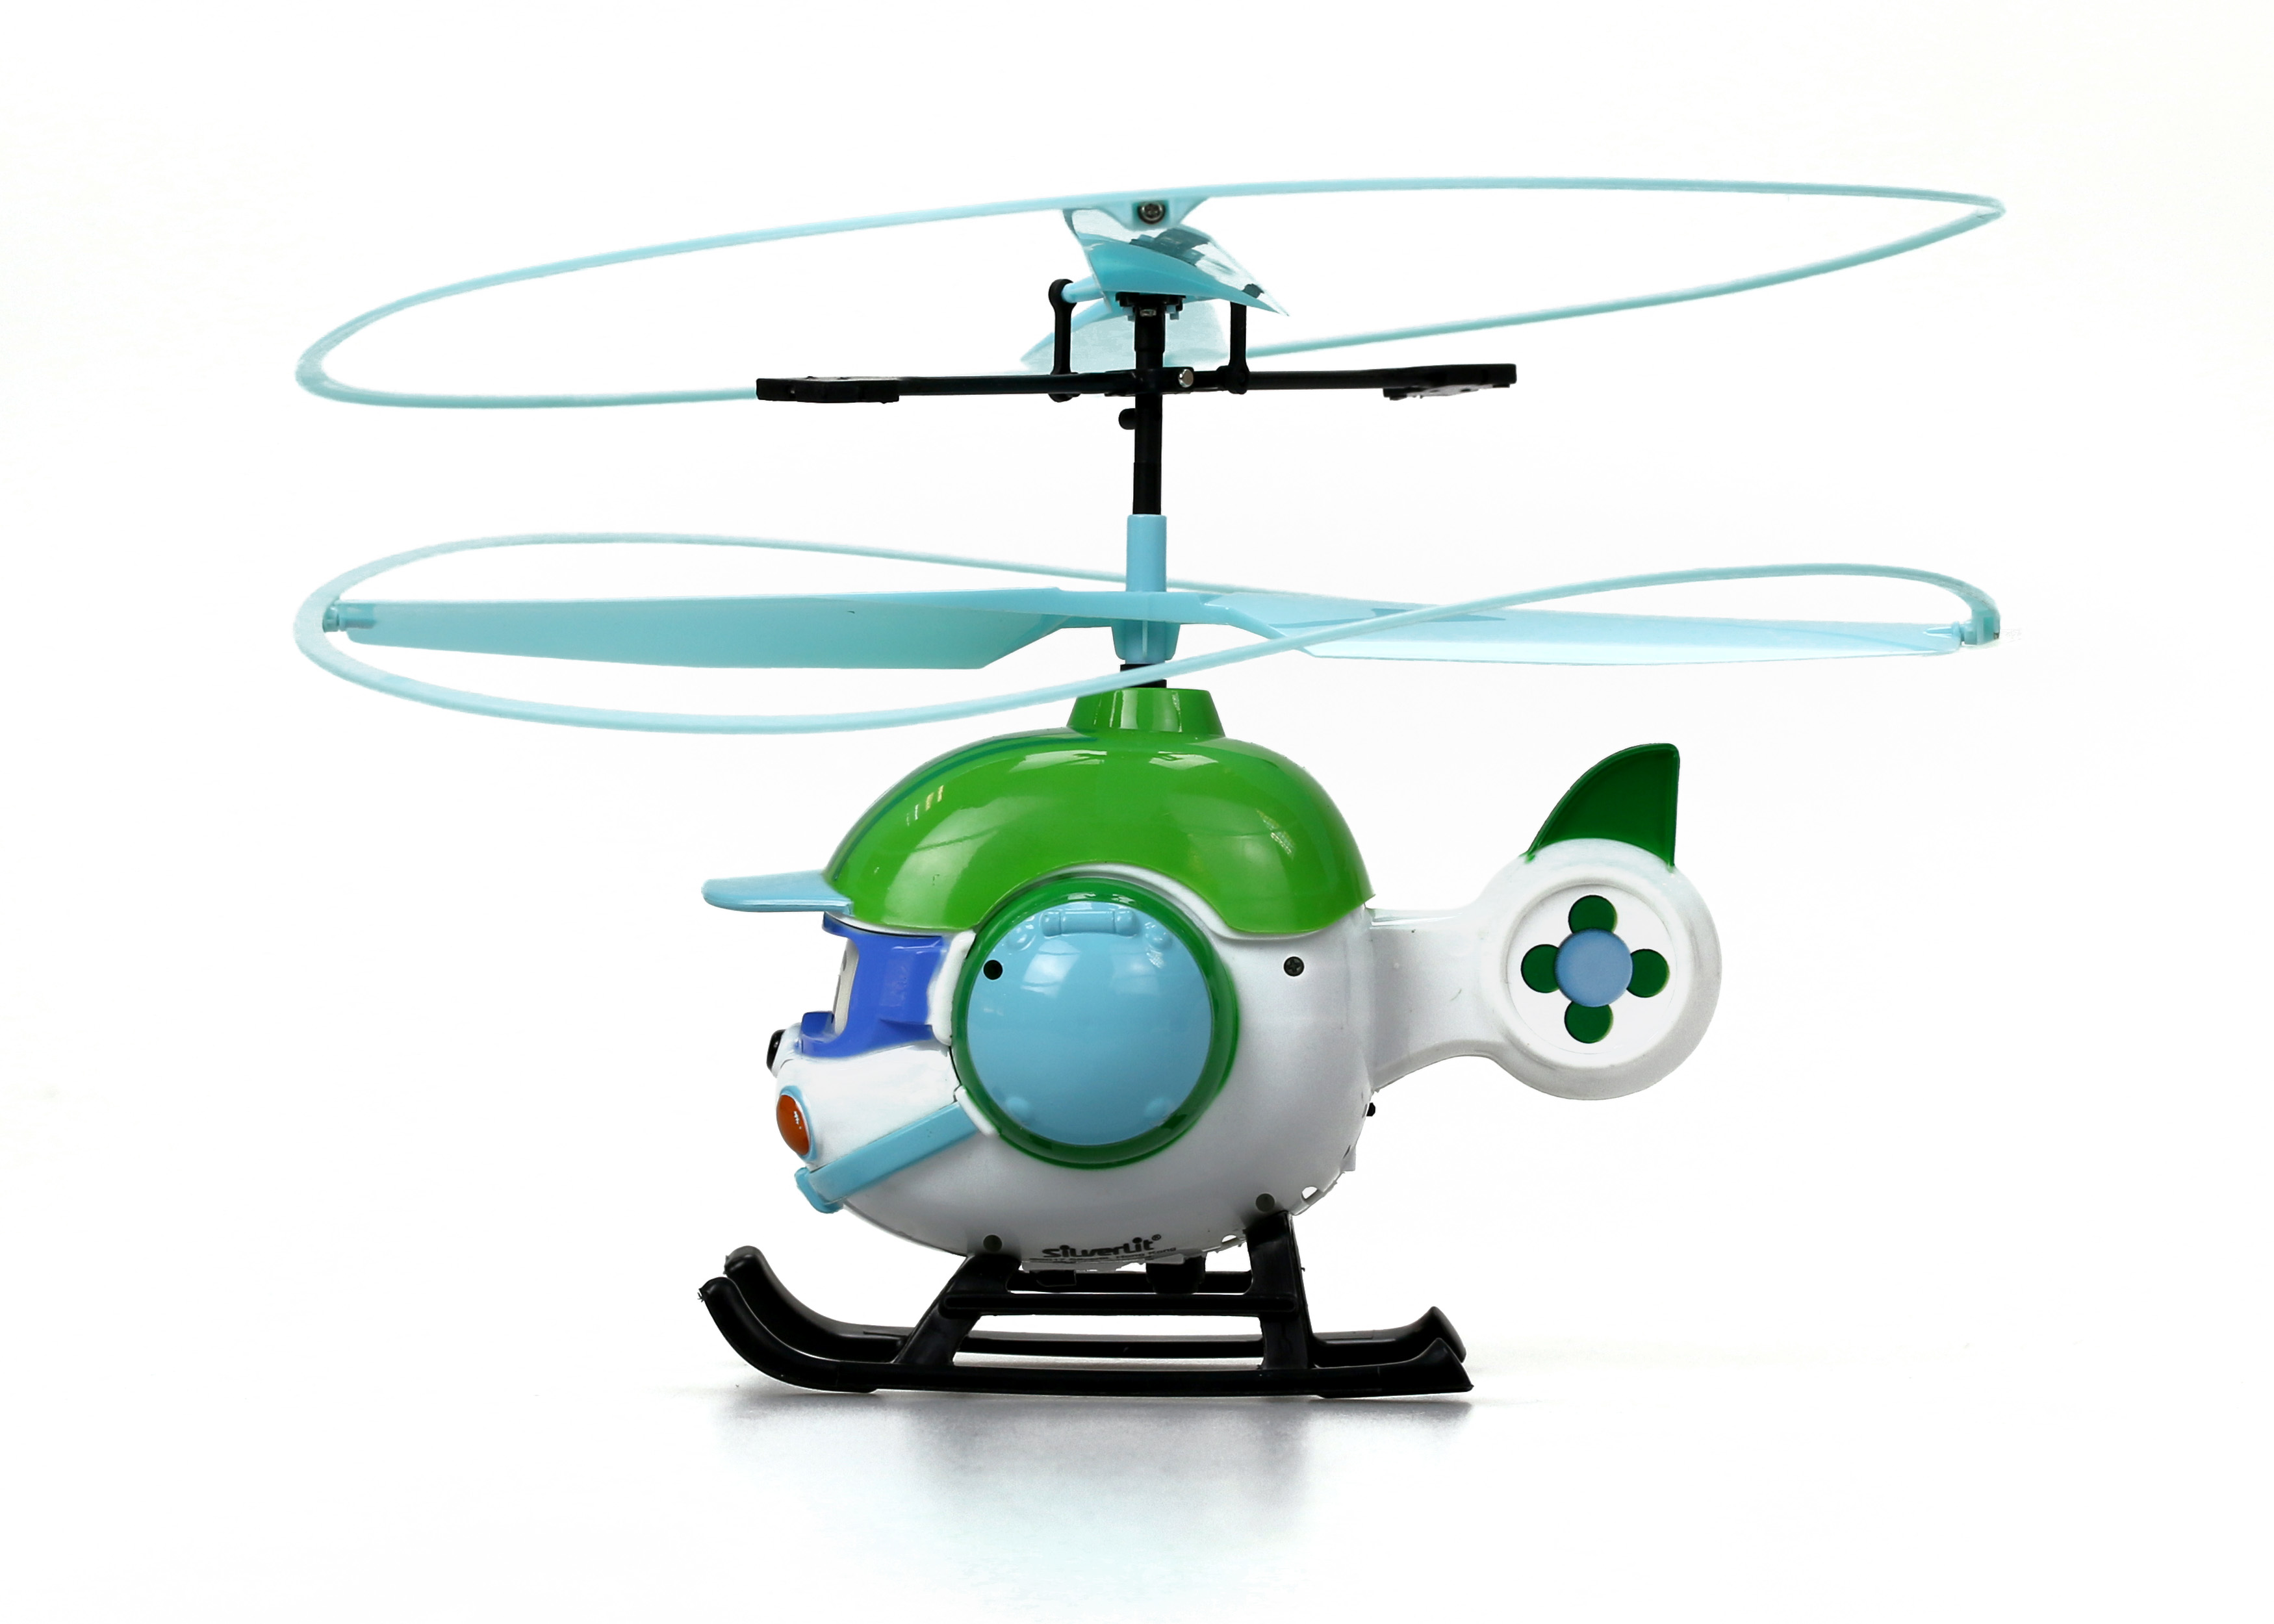 Вертолет купить игрушка. Вертолет Silverlit Robocar Poli Хэли. Вертолётик Хелли игрушка. Вертолет Хелли на пульте управления. Робокар вертолет Хелли радиоуправляемые.